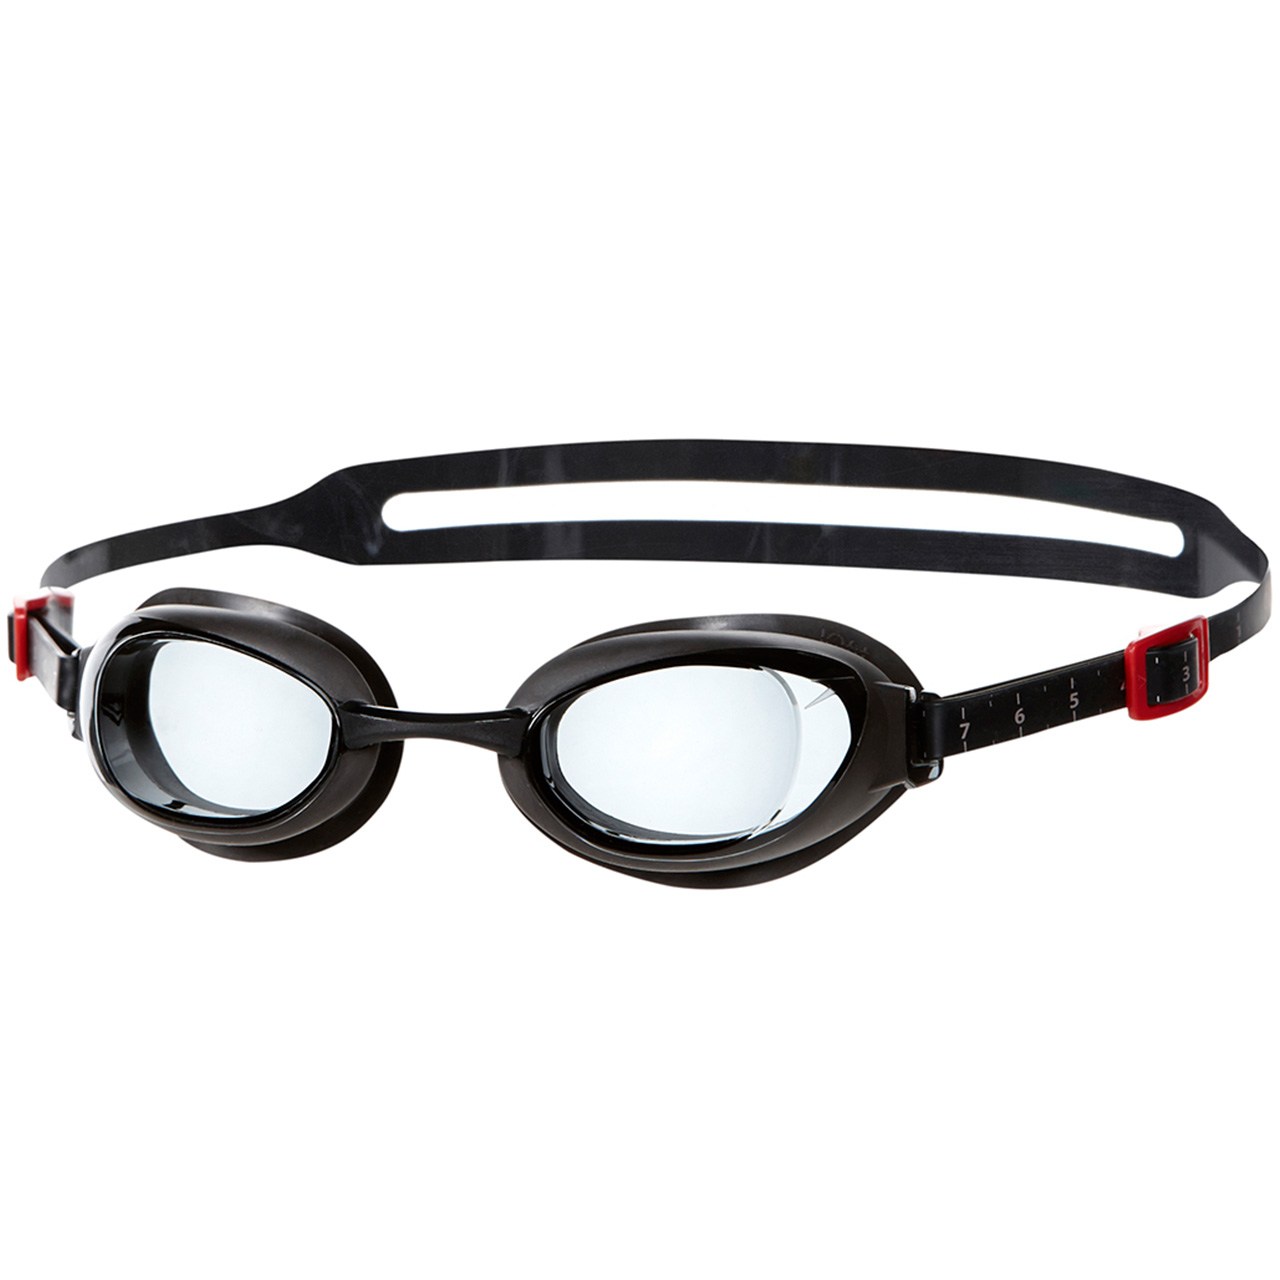 عینک شنای اسپیدو مدل Aquapure Prescription سایز 7